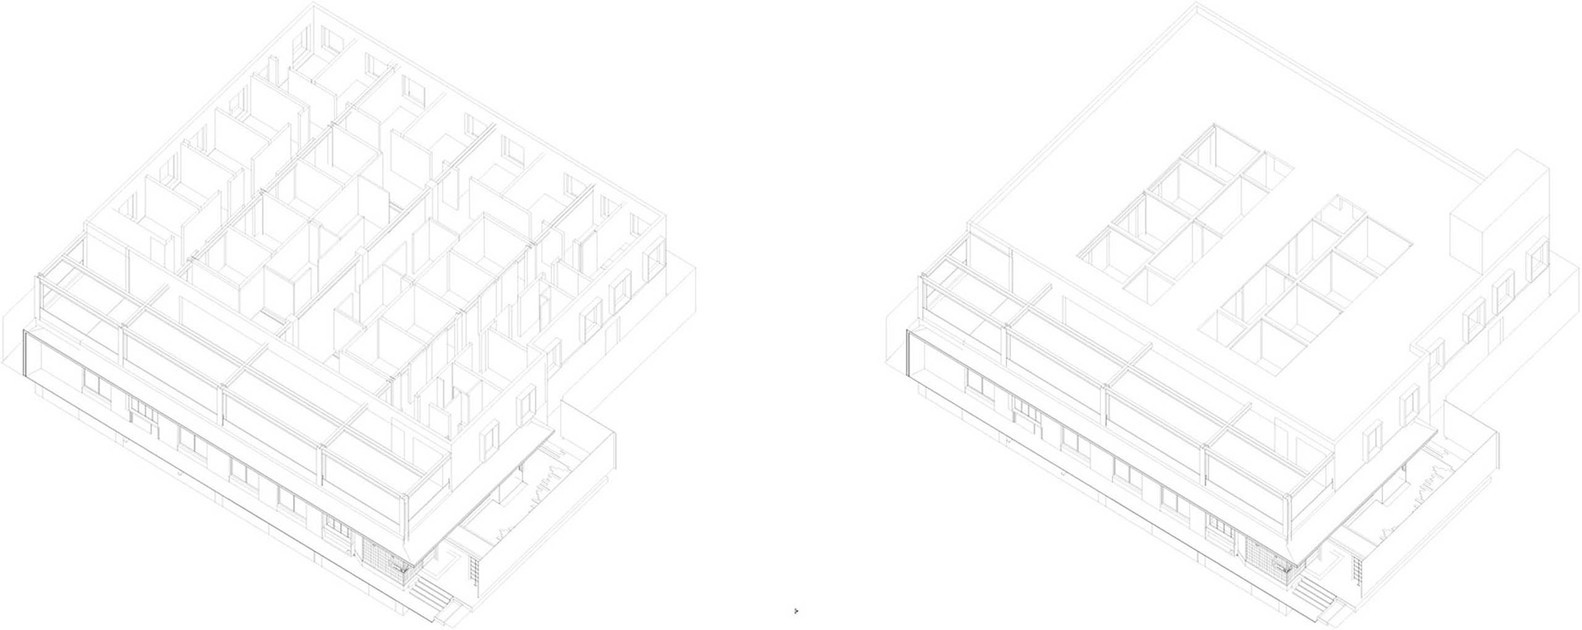 北京东城共享际改造室内设计/北京大观建筑设计